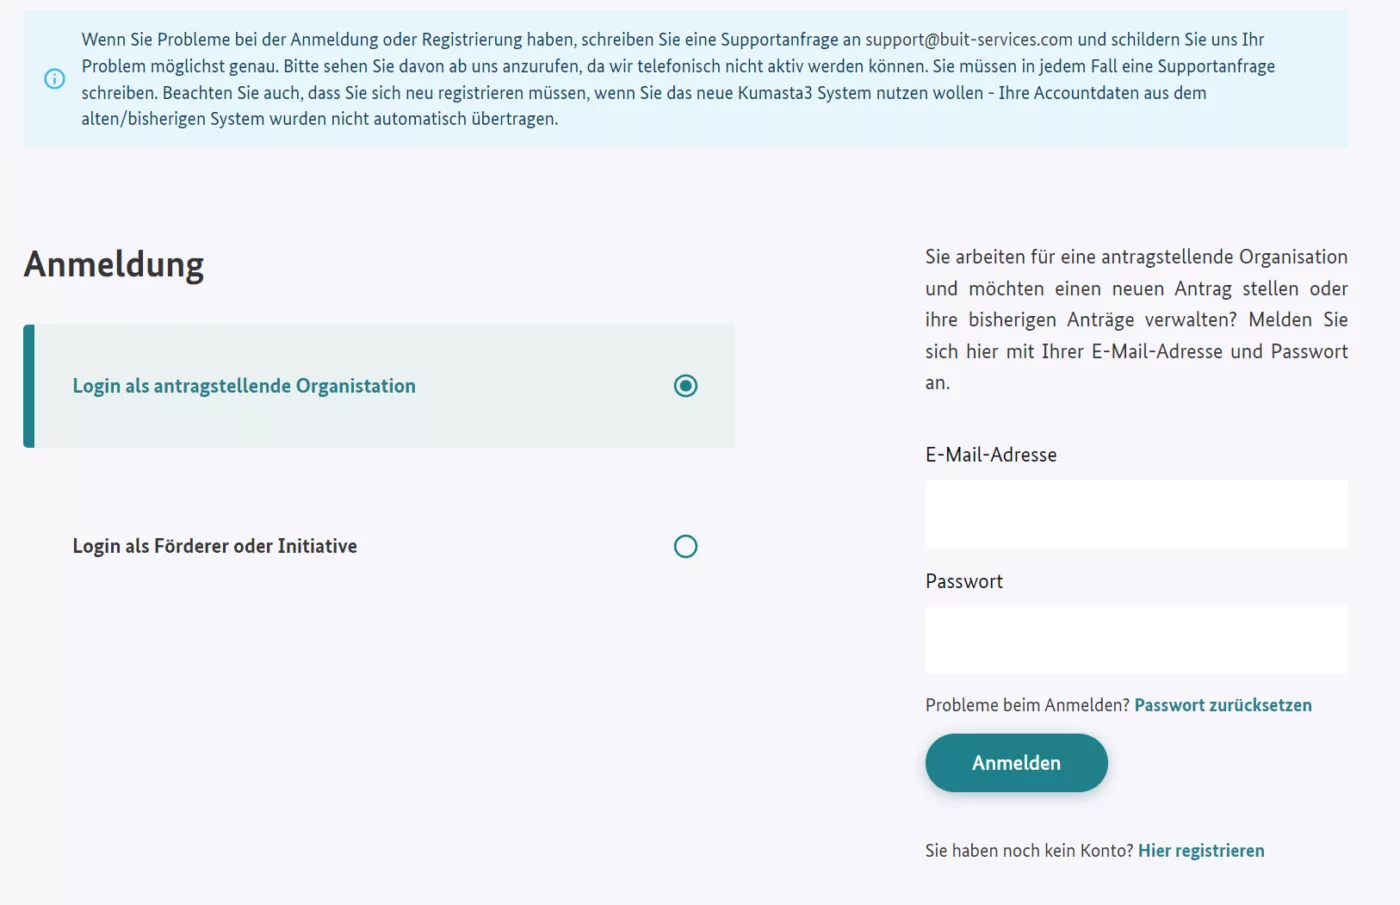 Bildschirmfoto aus kumasta zur Anmeldung: Markiert ist "Login als antragstellende Organisation". Auszufüllen für bereits registierte Organisation sind die Felder  E-Mail-Adresse und "Passwort". Zu betätigen ist ein "Anmelden"-Button. Noch nicht registrierte Organisation können ein Profil erstellen, in dem sie auf "Hier registrieren" klicken.